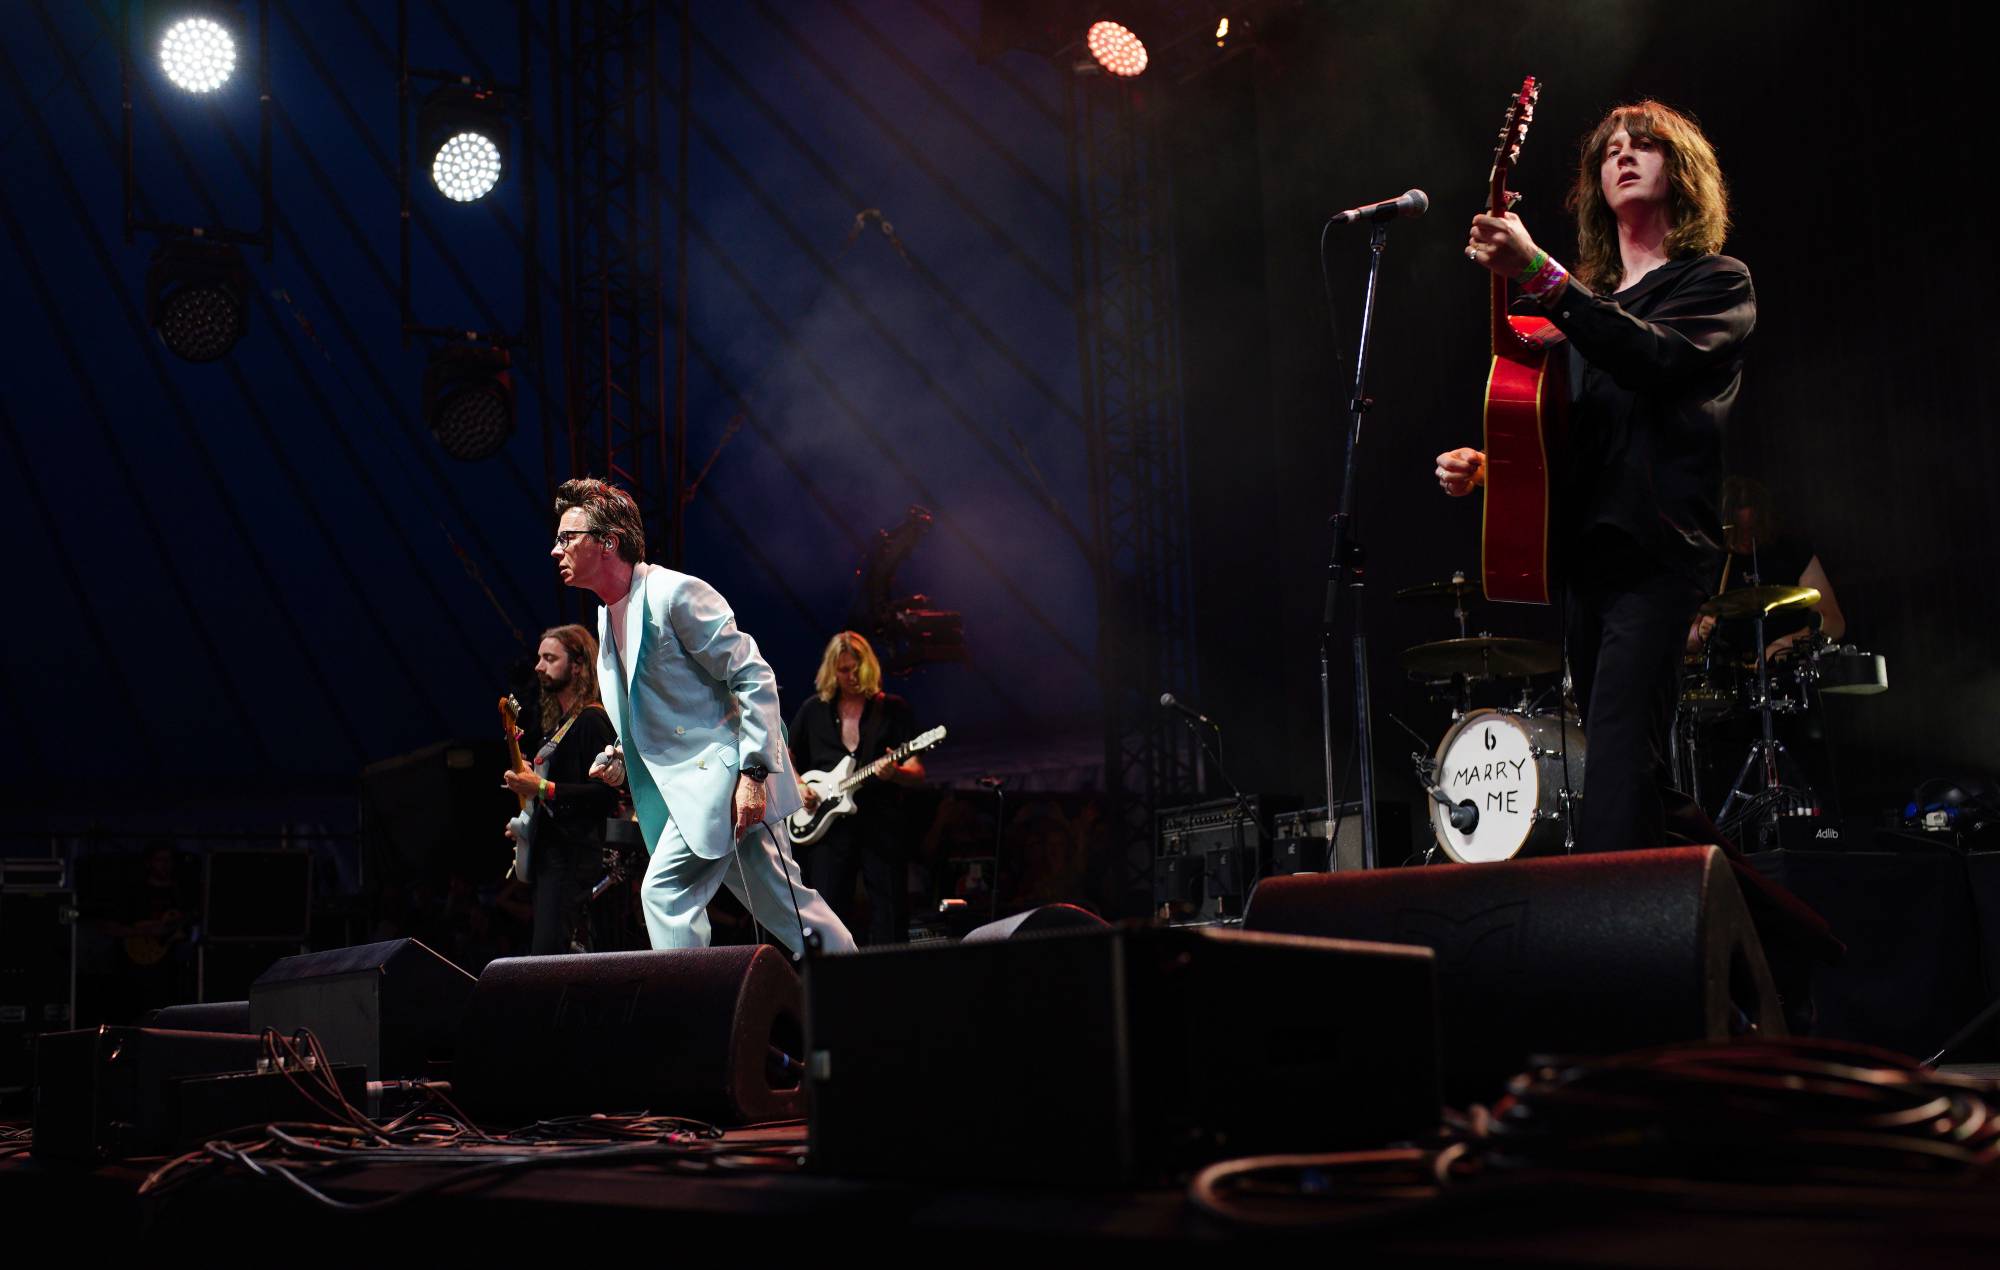 Поклонники реагируют на кавер Blossoms и Рика Эстли The Smiths, действие которого происходит на Glastonbury 2023